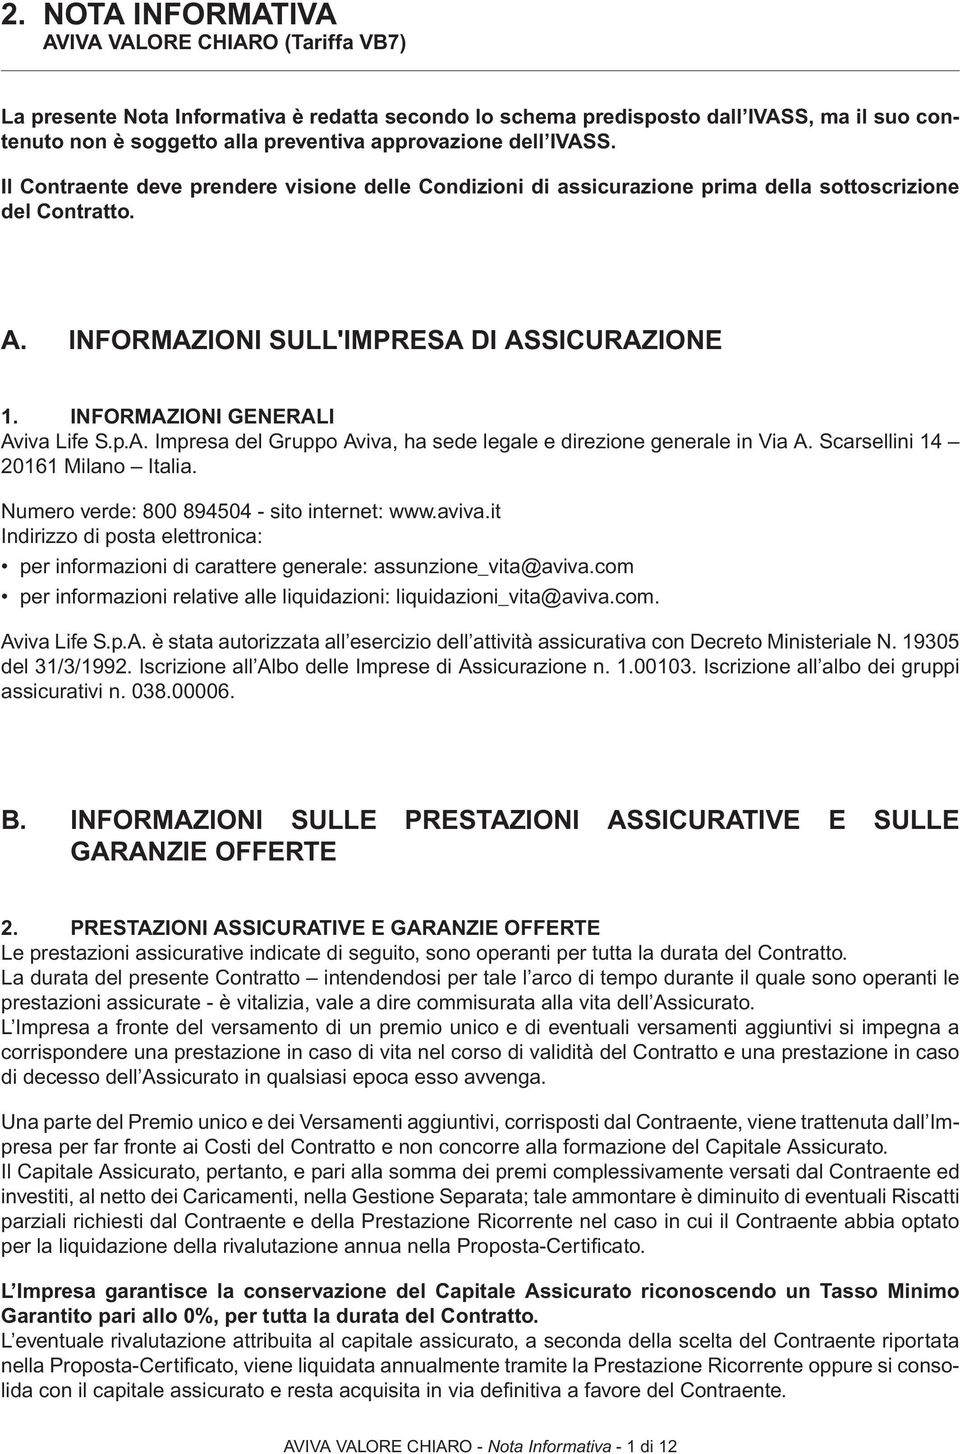 INFORMAZIONI GENERALI Aviva Life S.p.A. Impresa del Gruppo Aviva, ha sede legale e direzione generale in Via A. Scarsellini 14 20161 Milano Italia. Numero verde: 800 894504 - sito internet: www.aviva.